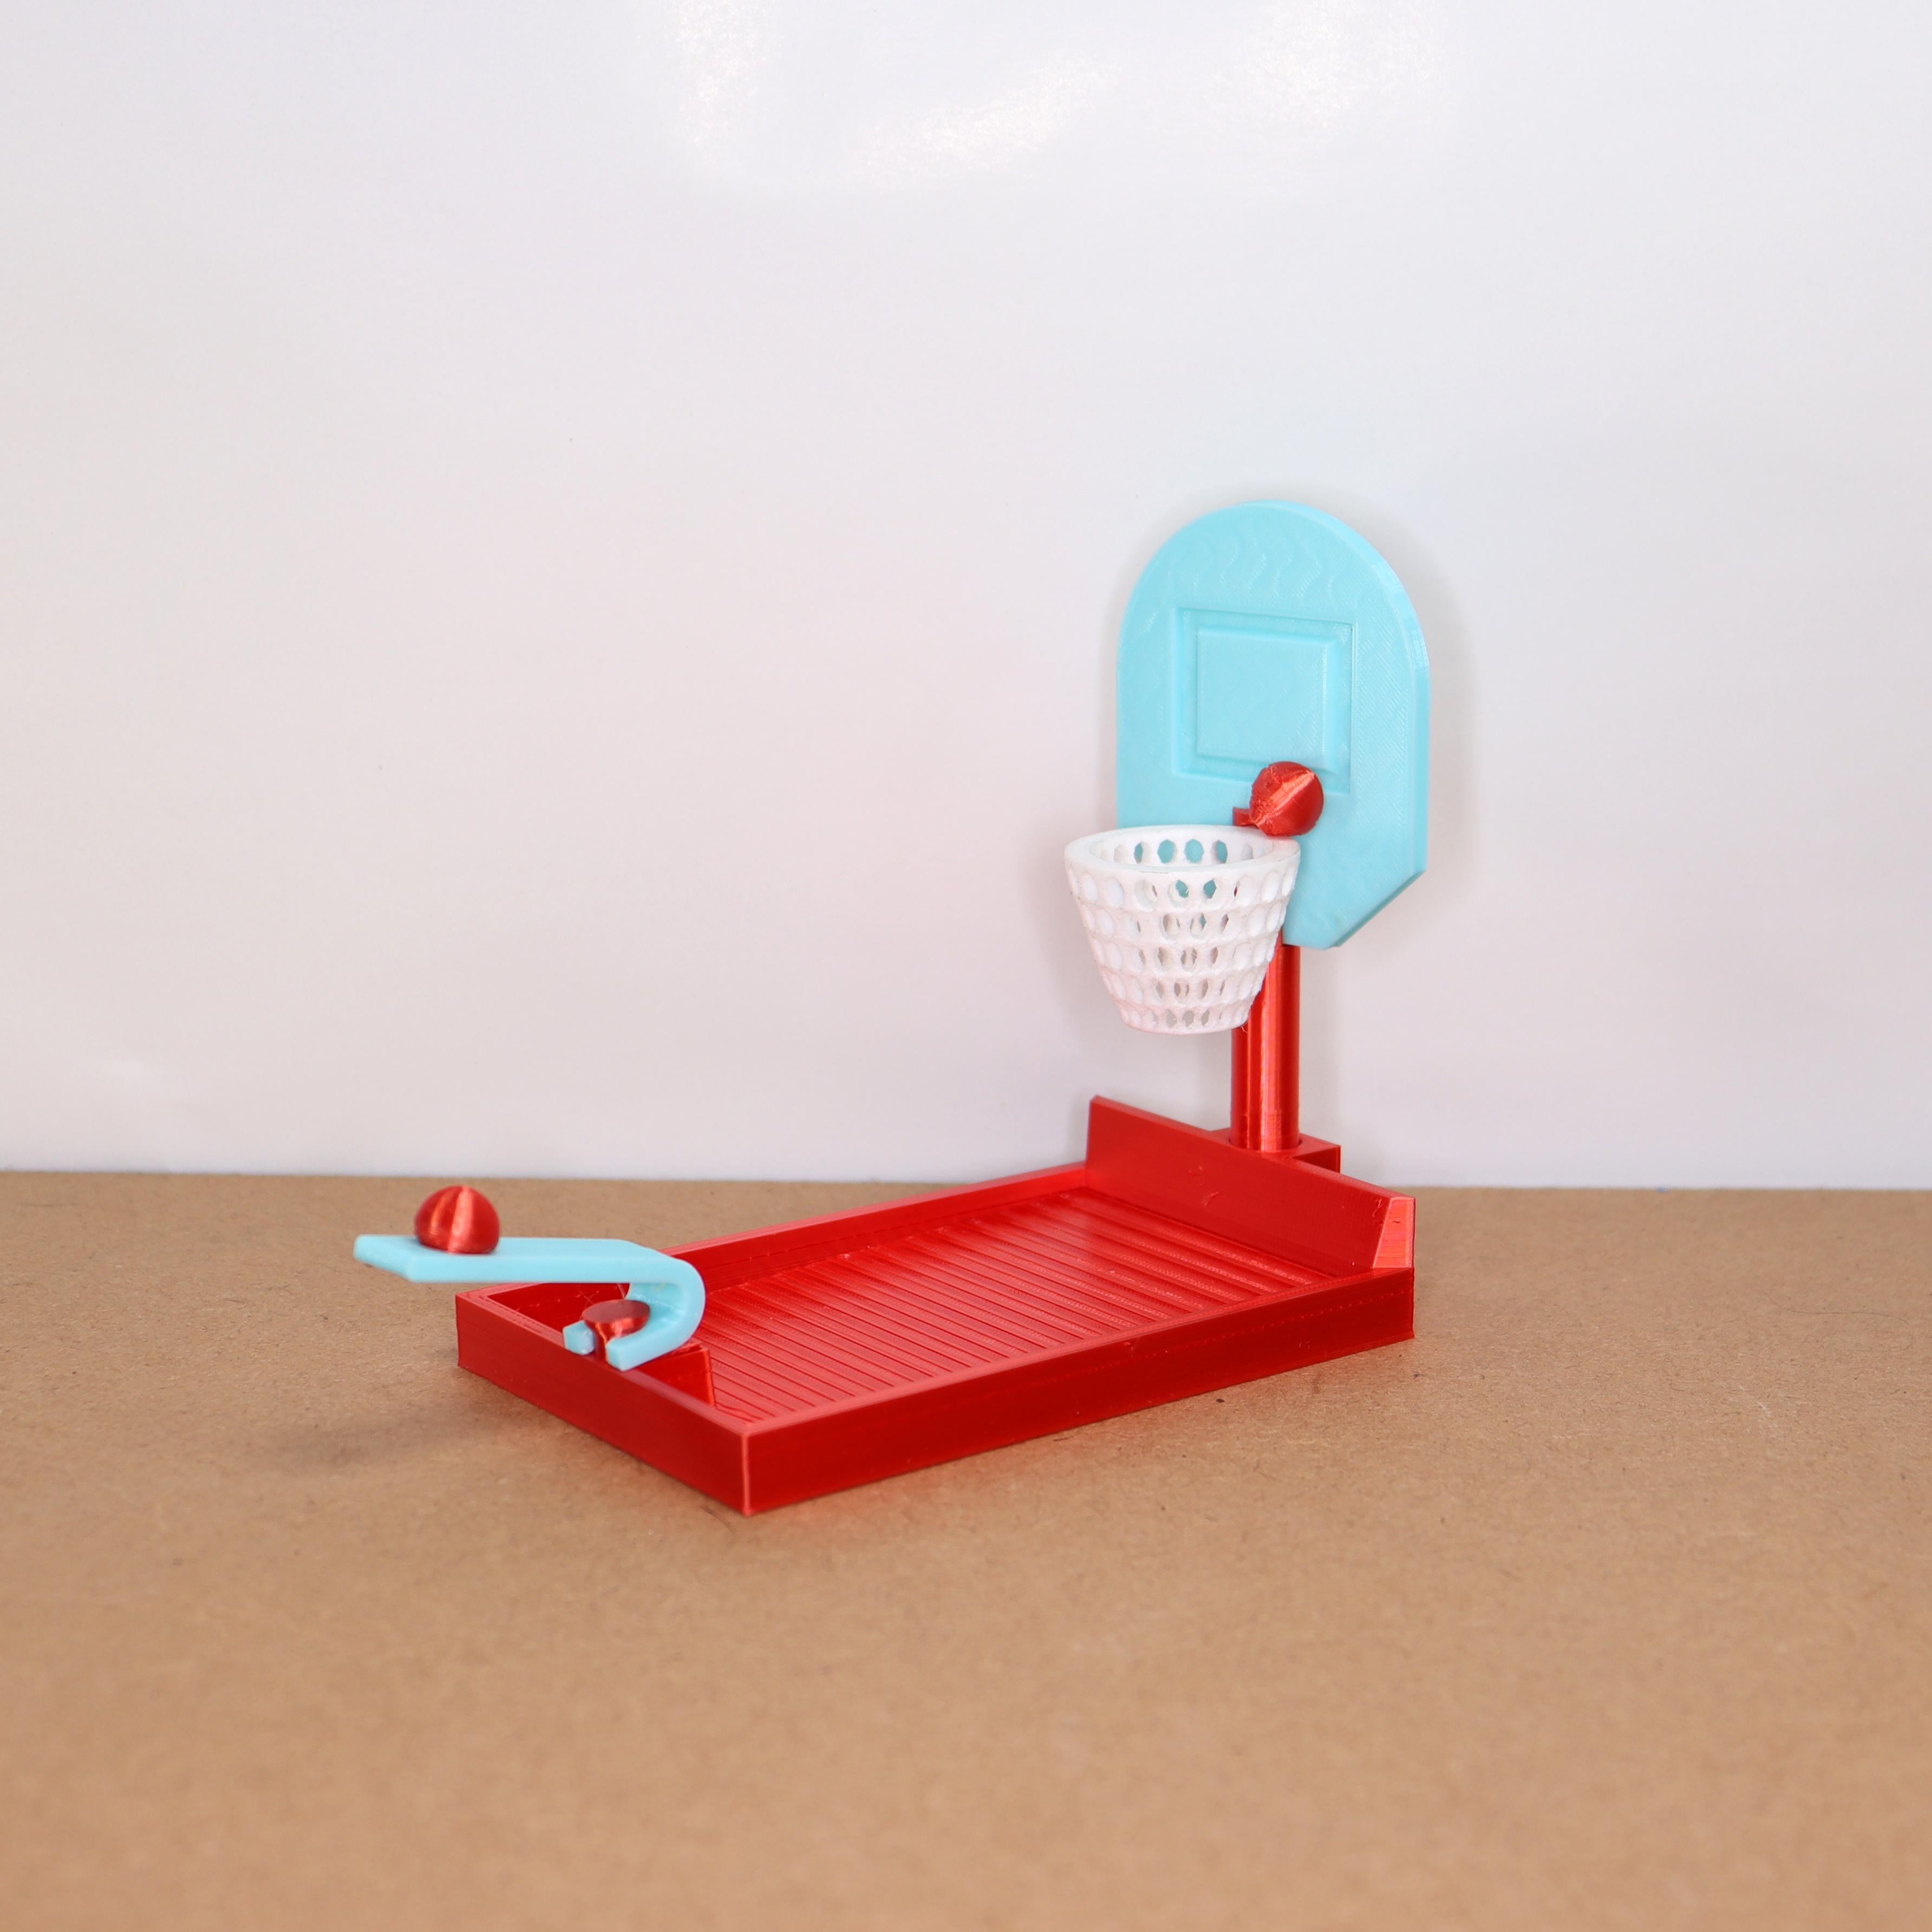 Basket ball desk toy 3d model